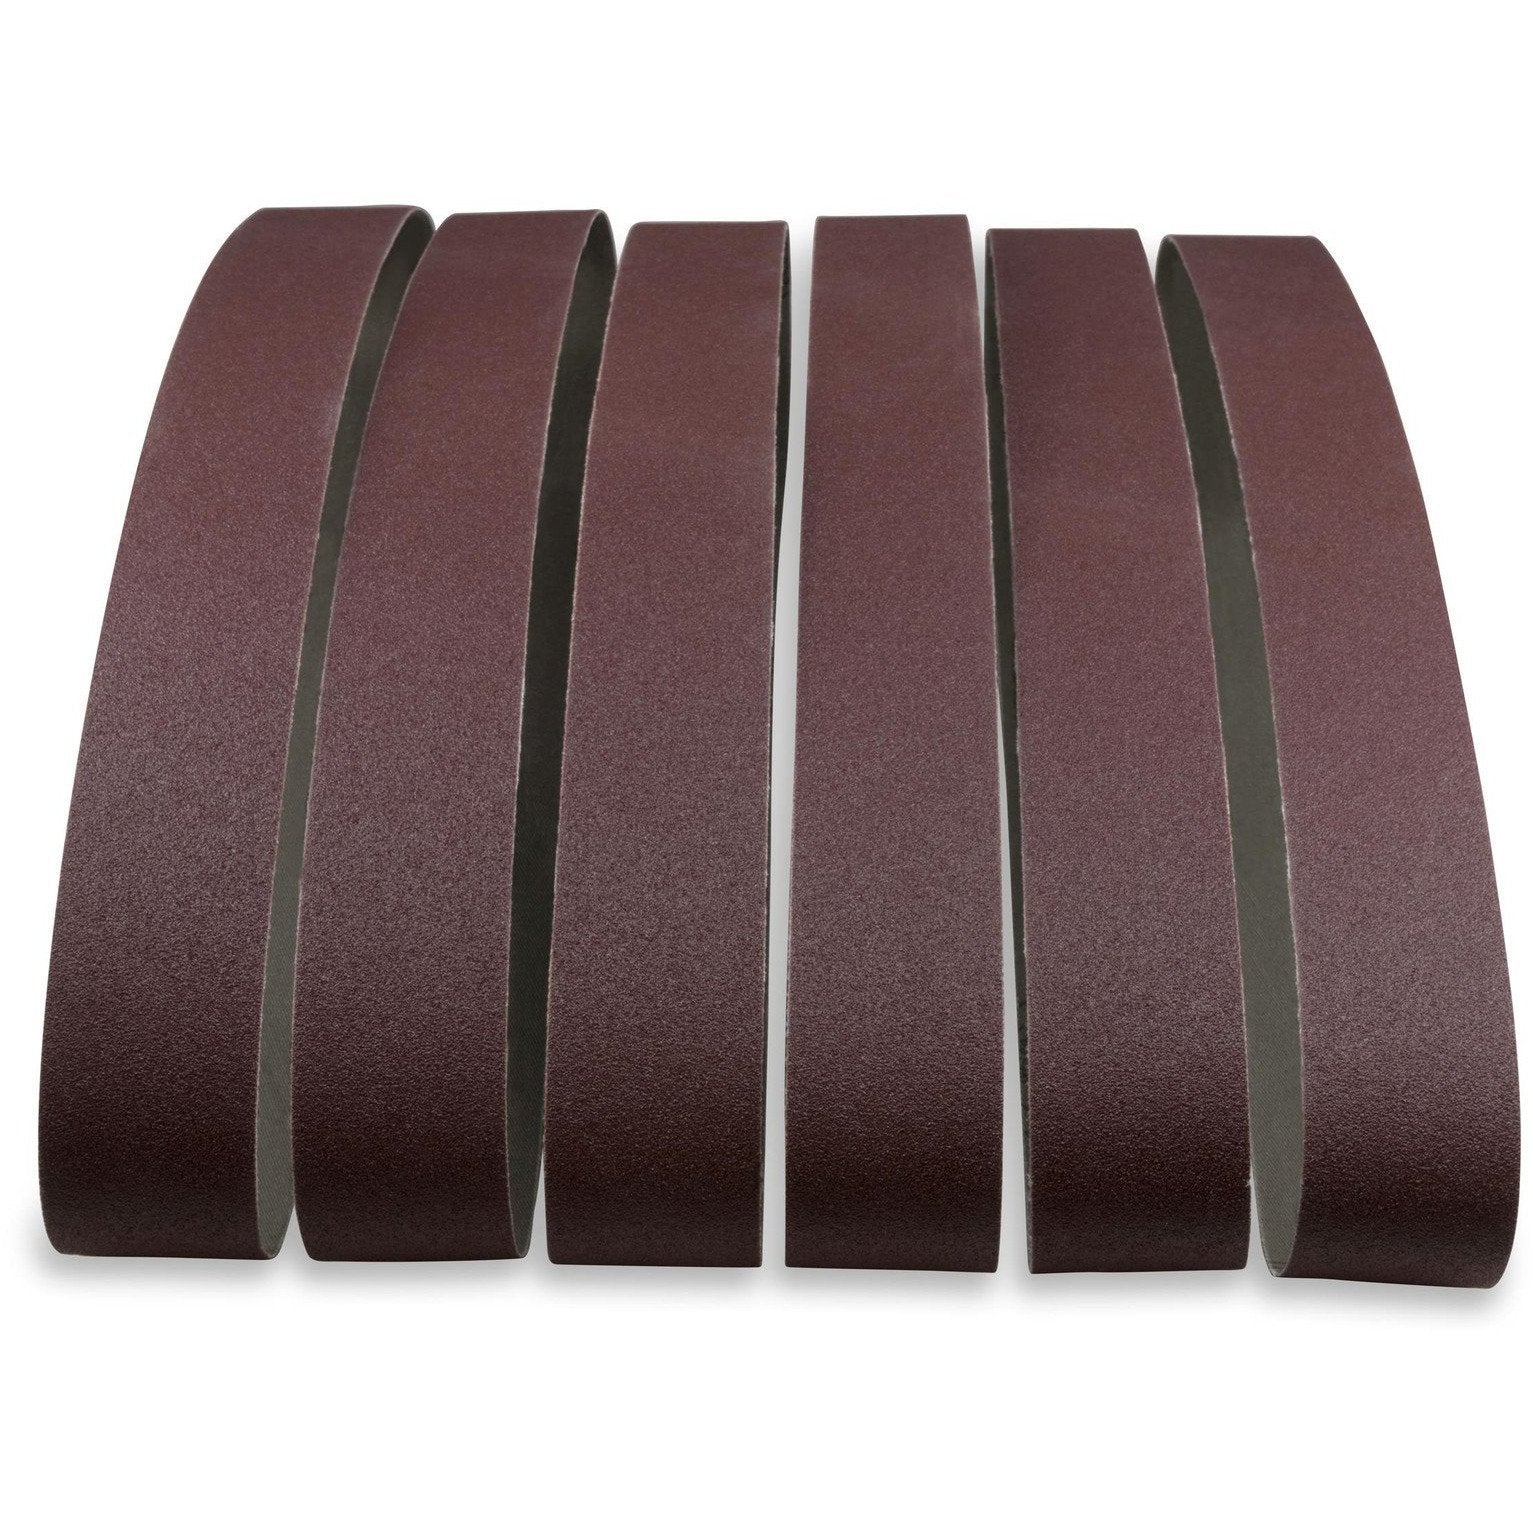 1 X 72 Inch Aluminum Oxide Metal Sanding Belts, 12 Pack - Red Label Abrasives